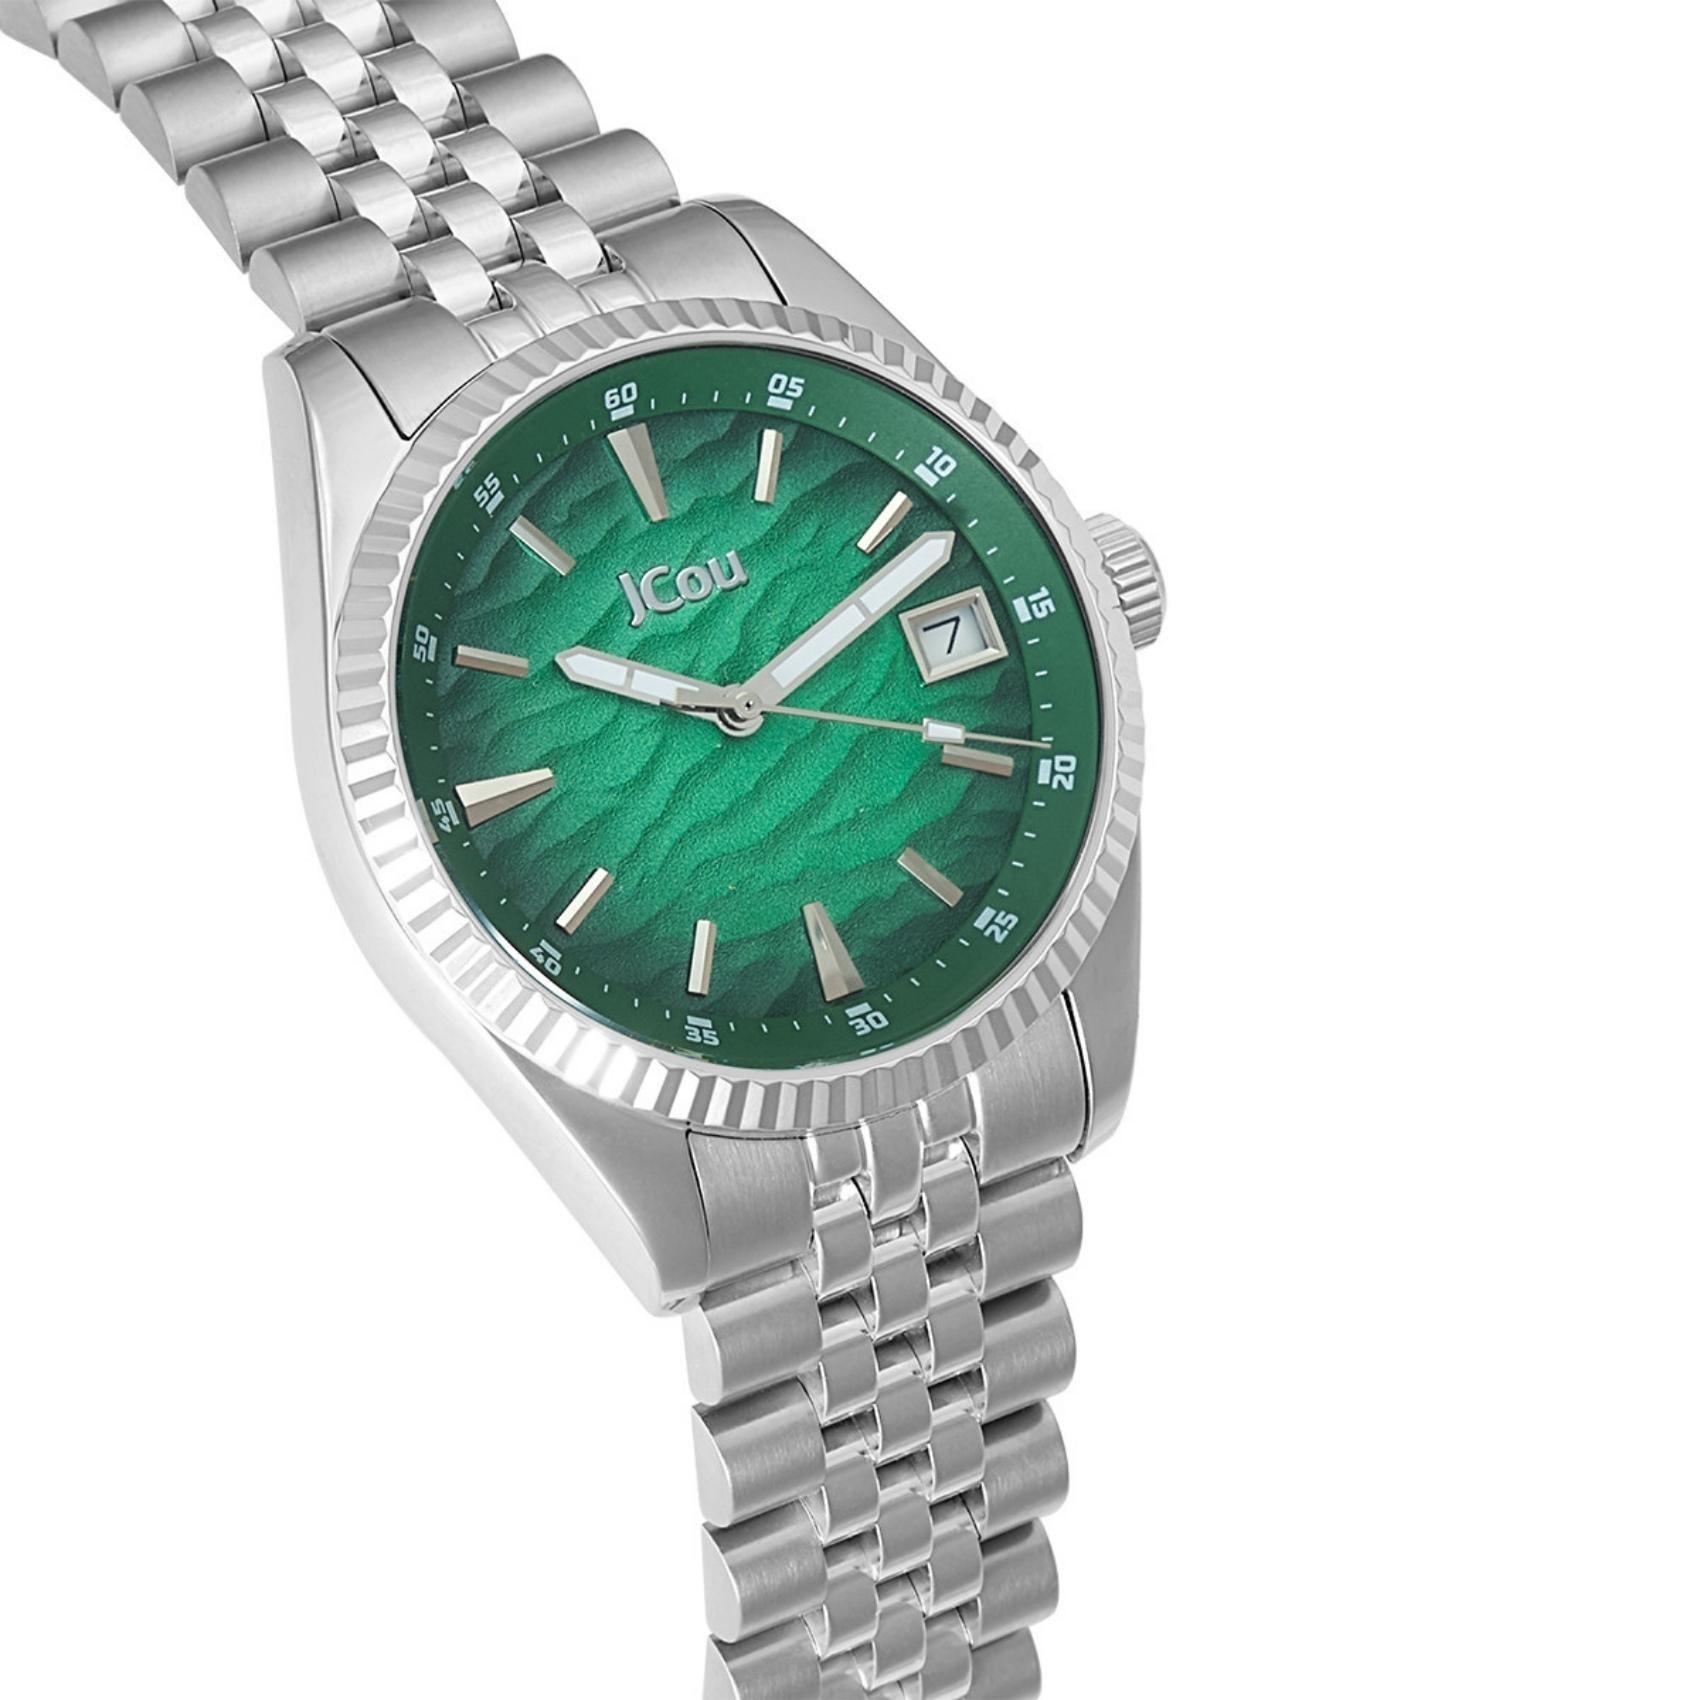 Γυναικέιο ρολόι JCOU Queen's Land JU19071-1 με ασημί ατσάλινο μπρασελέ και πράσινο καντράν διαμέτρου 36mm με ημερομηνία.